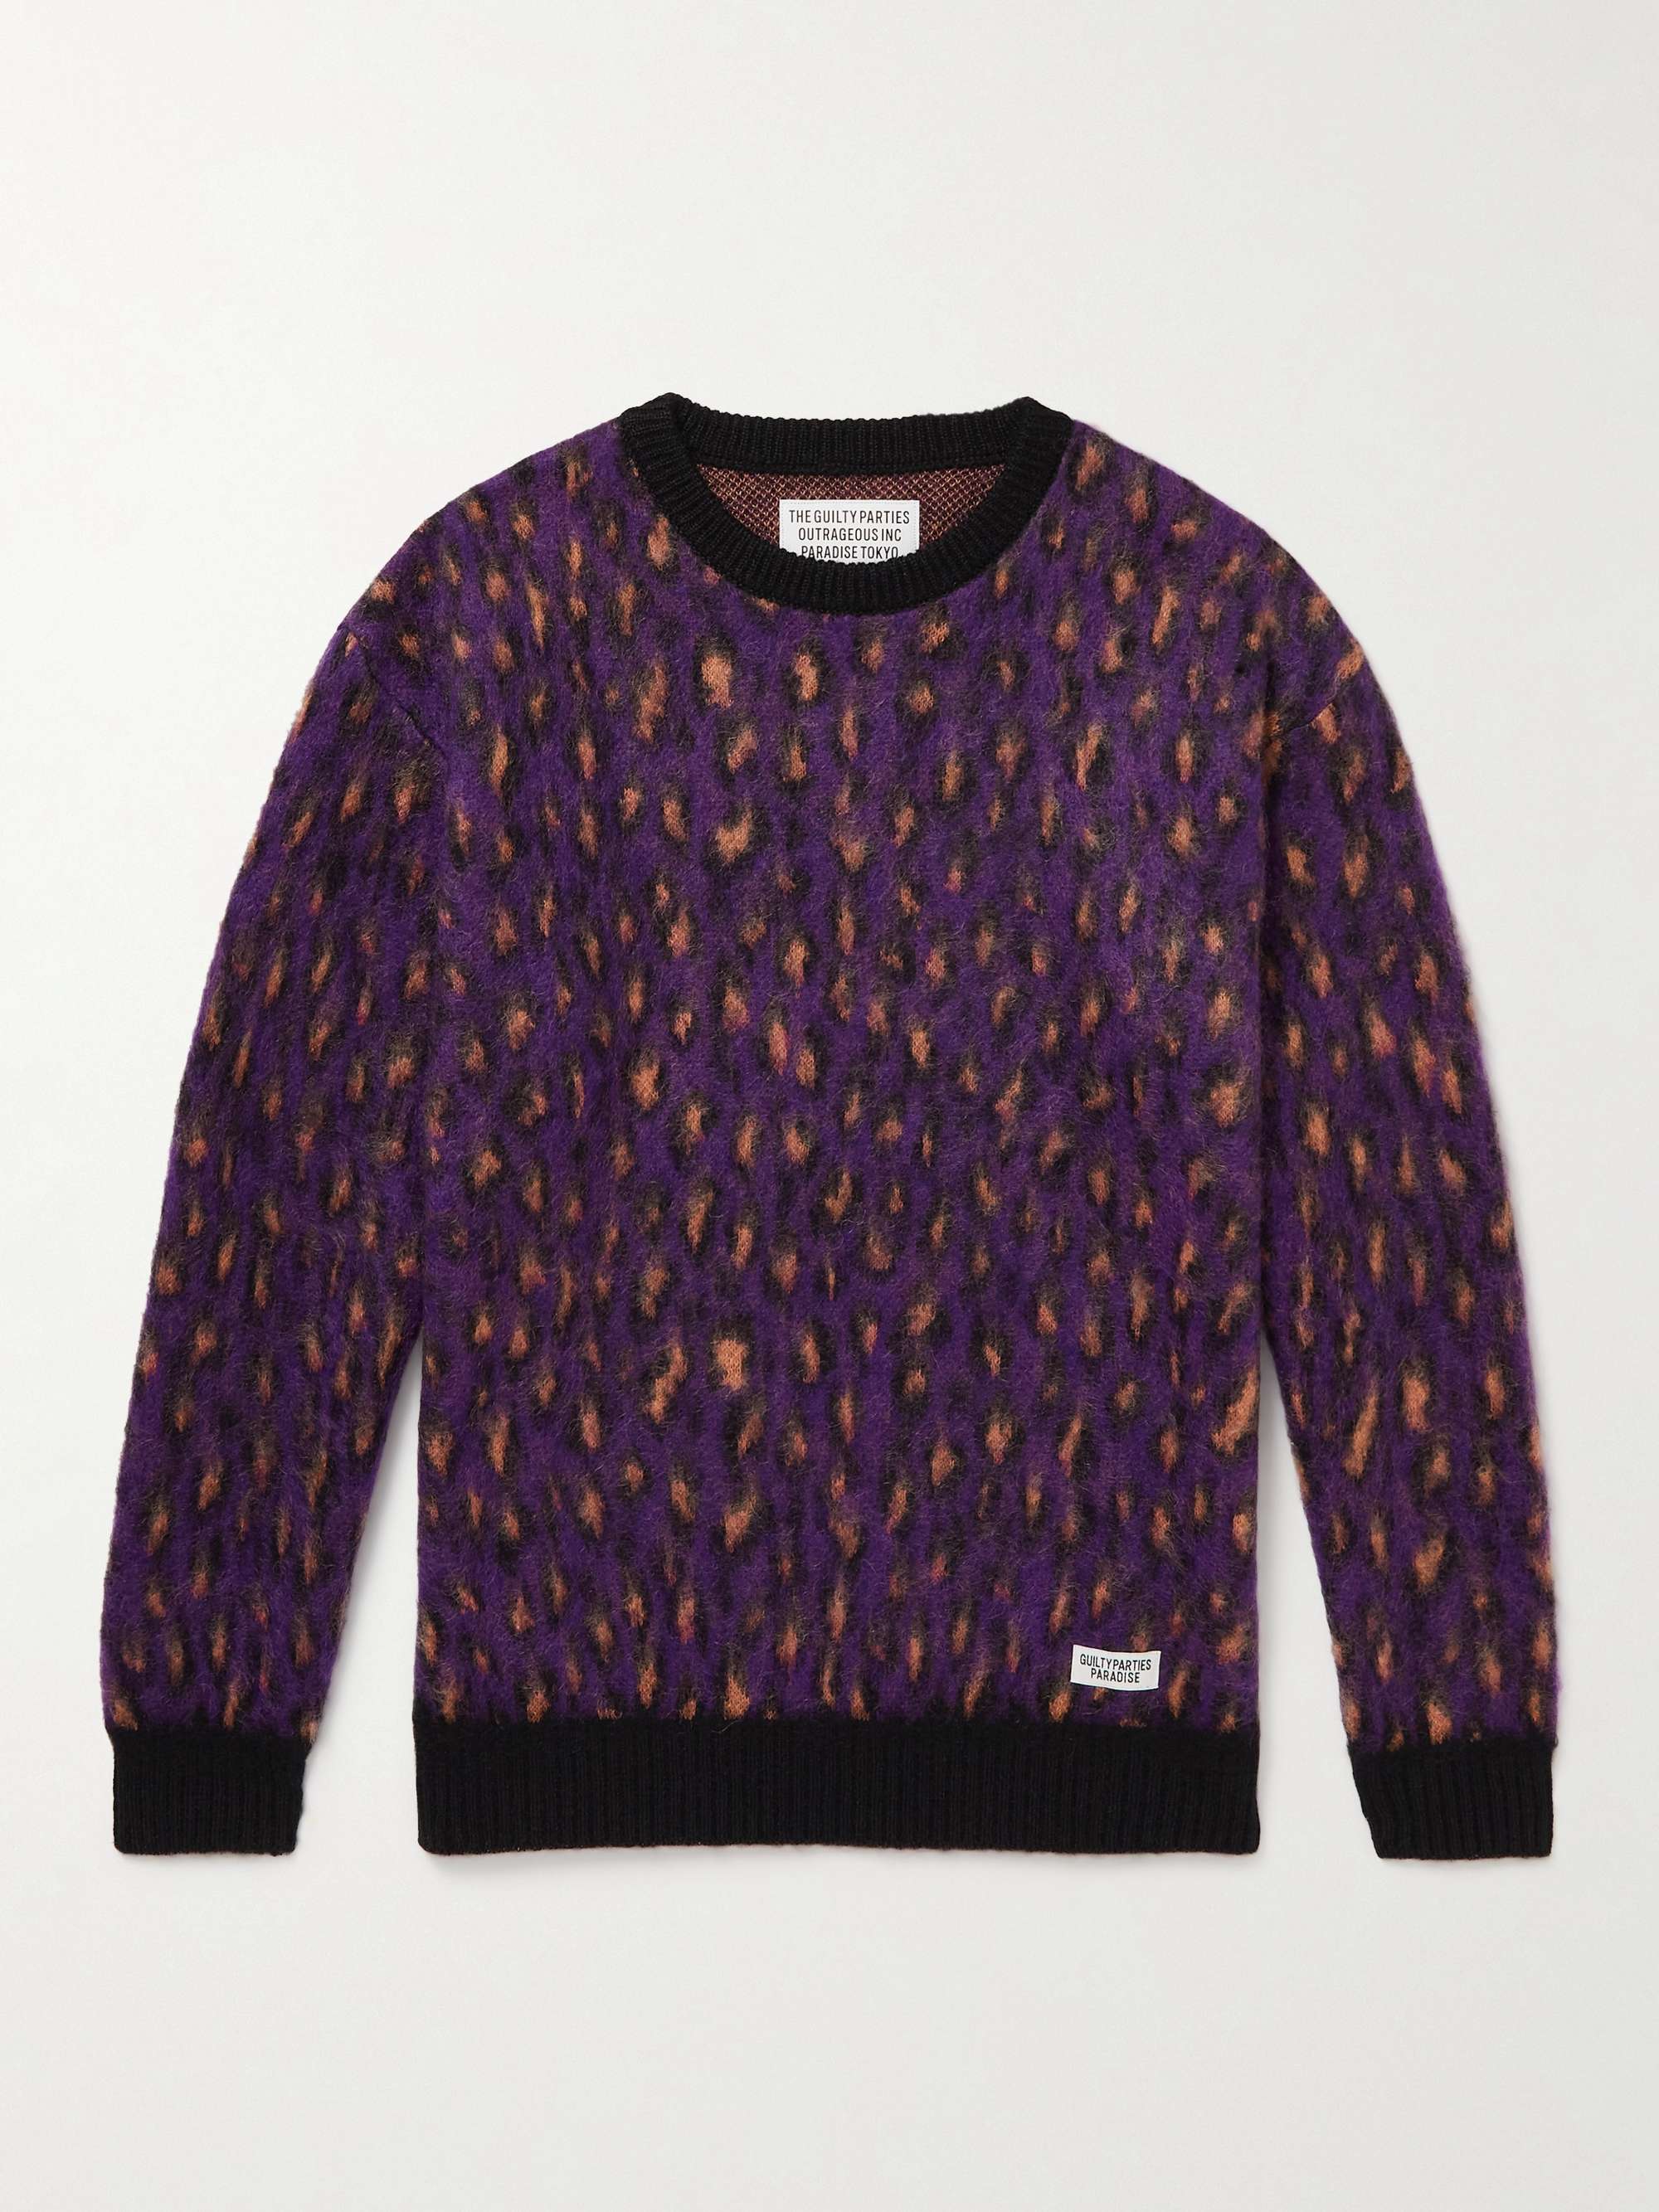 WACKO MARIA Leopard-Print Textured-Knit Sweater